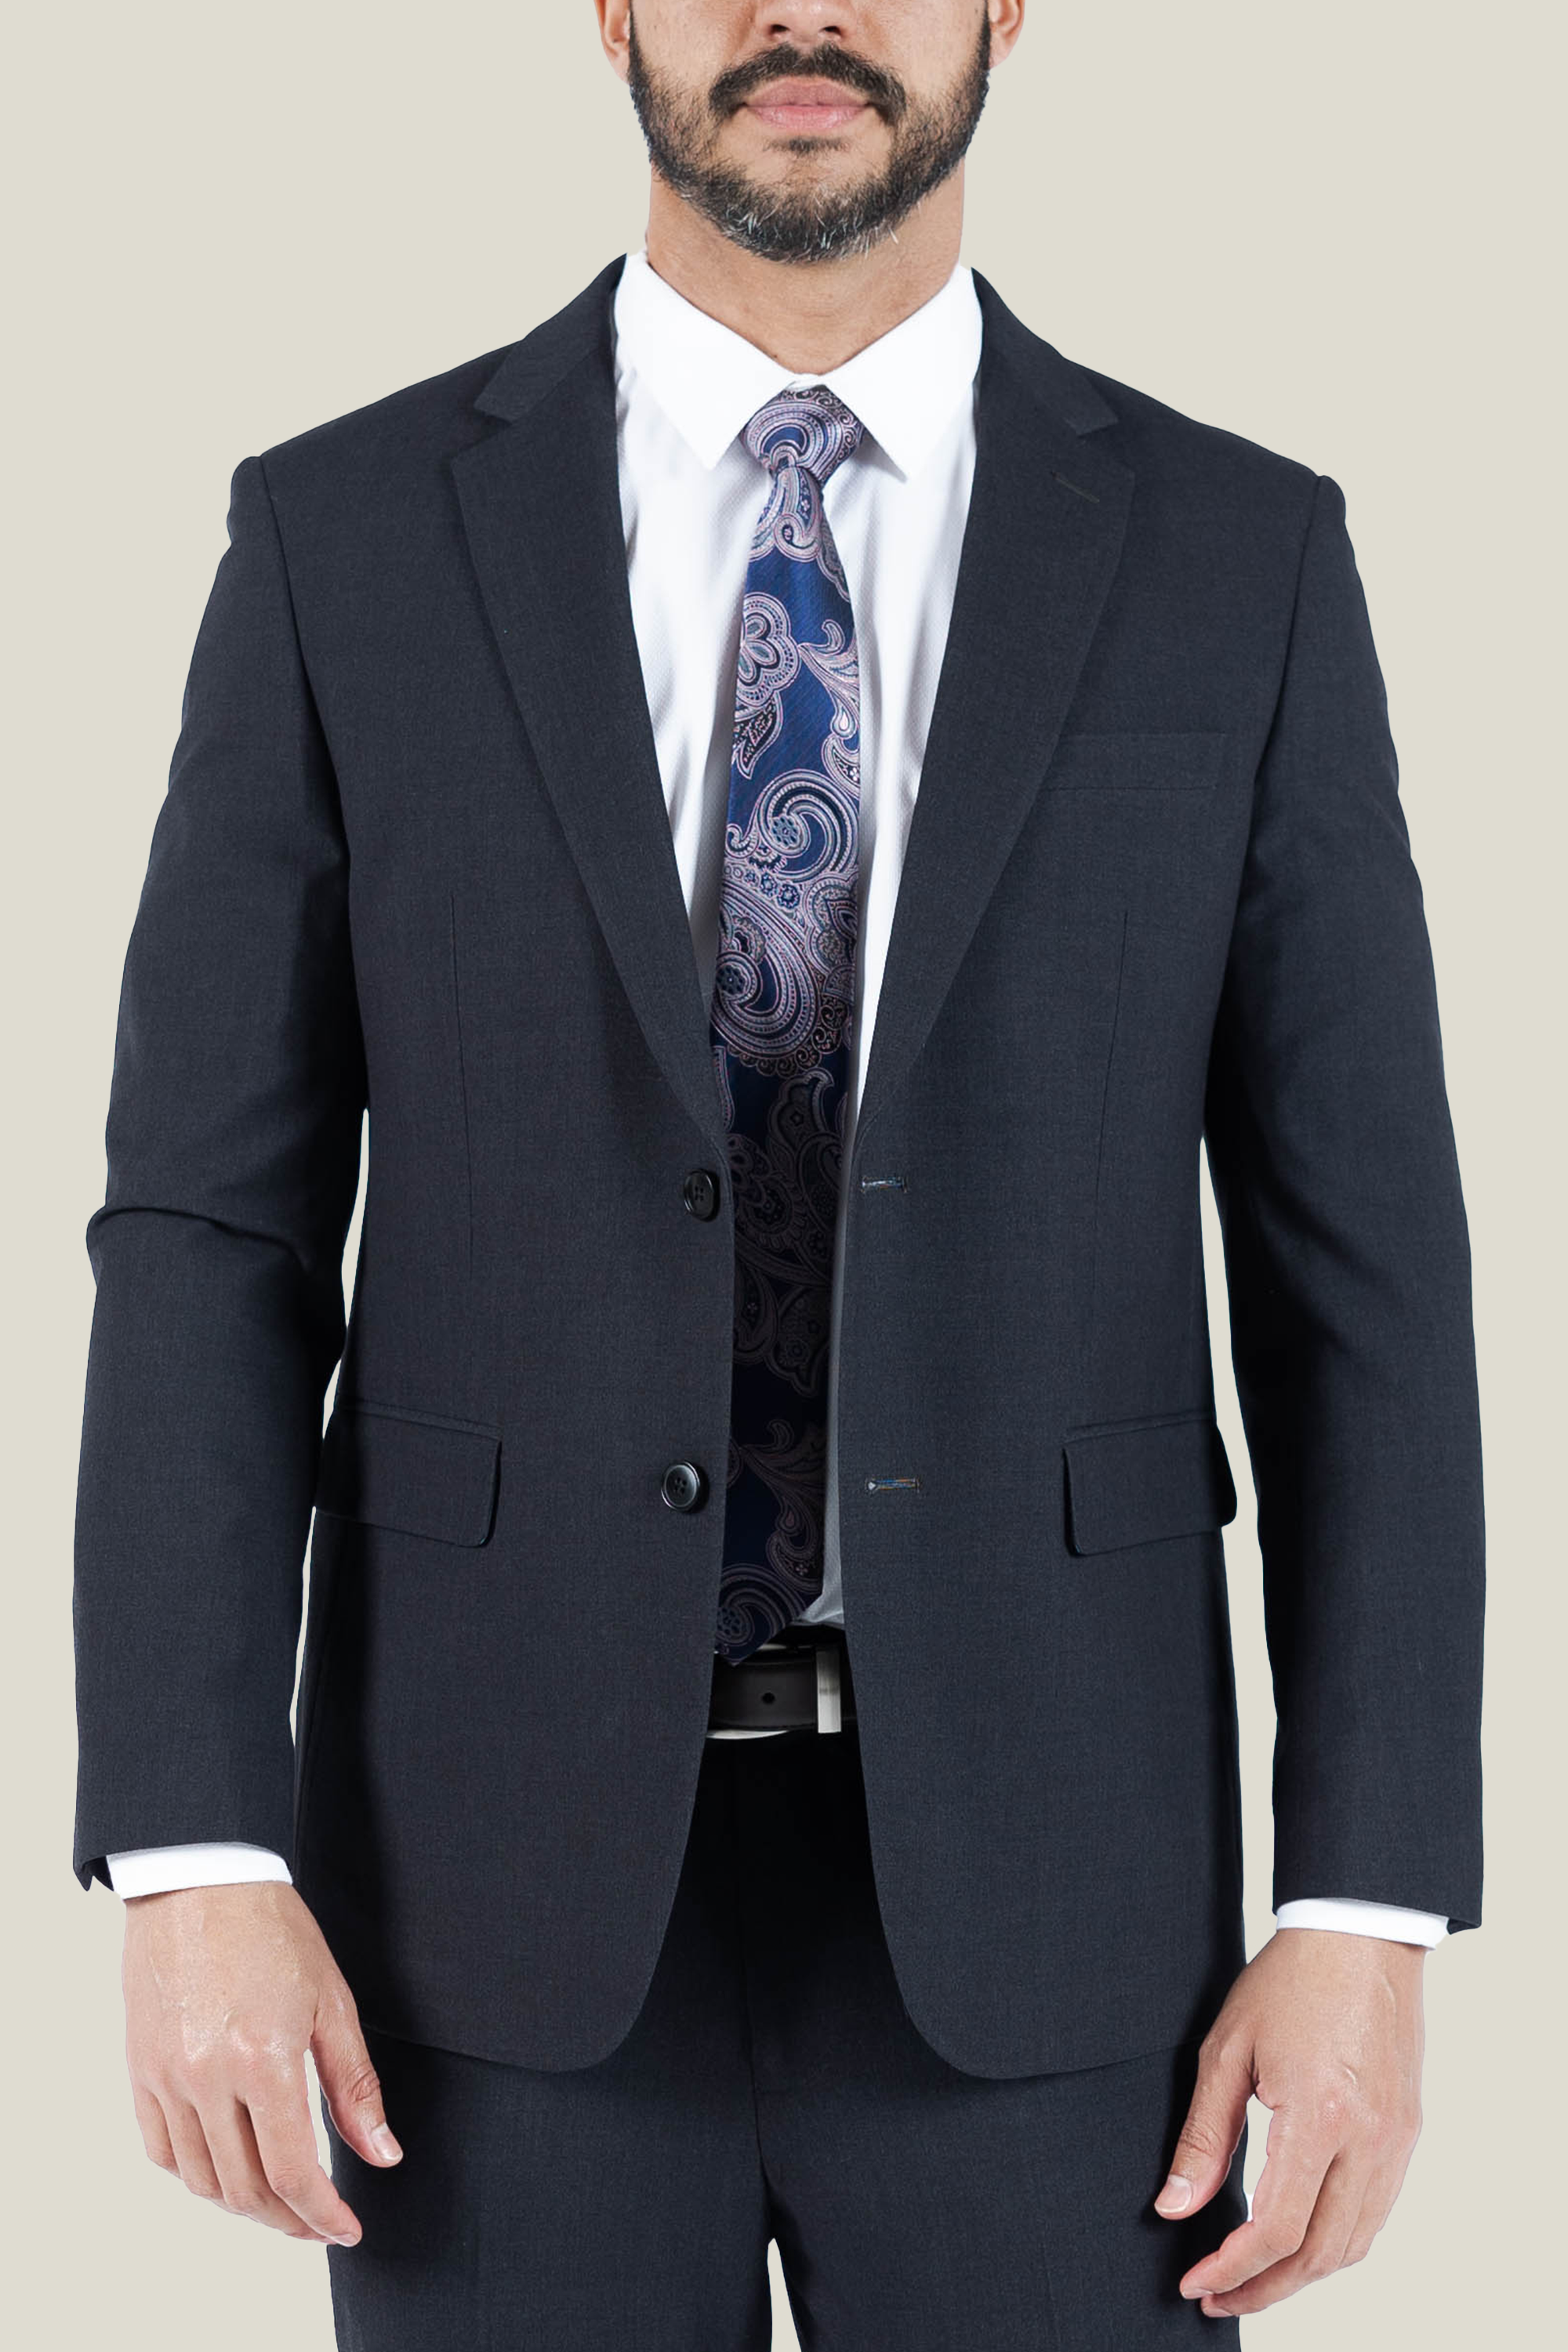 Men's Charcoal Grey Suit Jacket